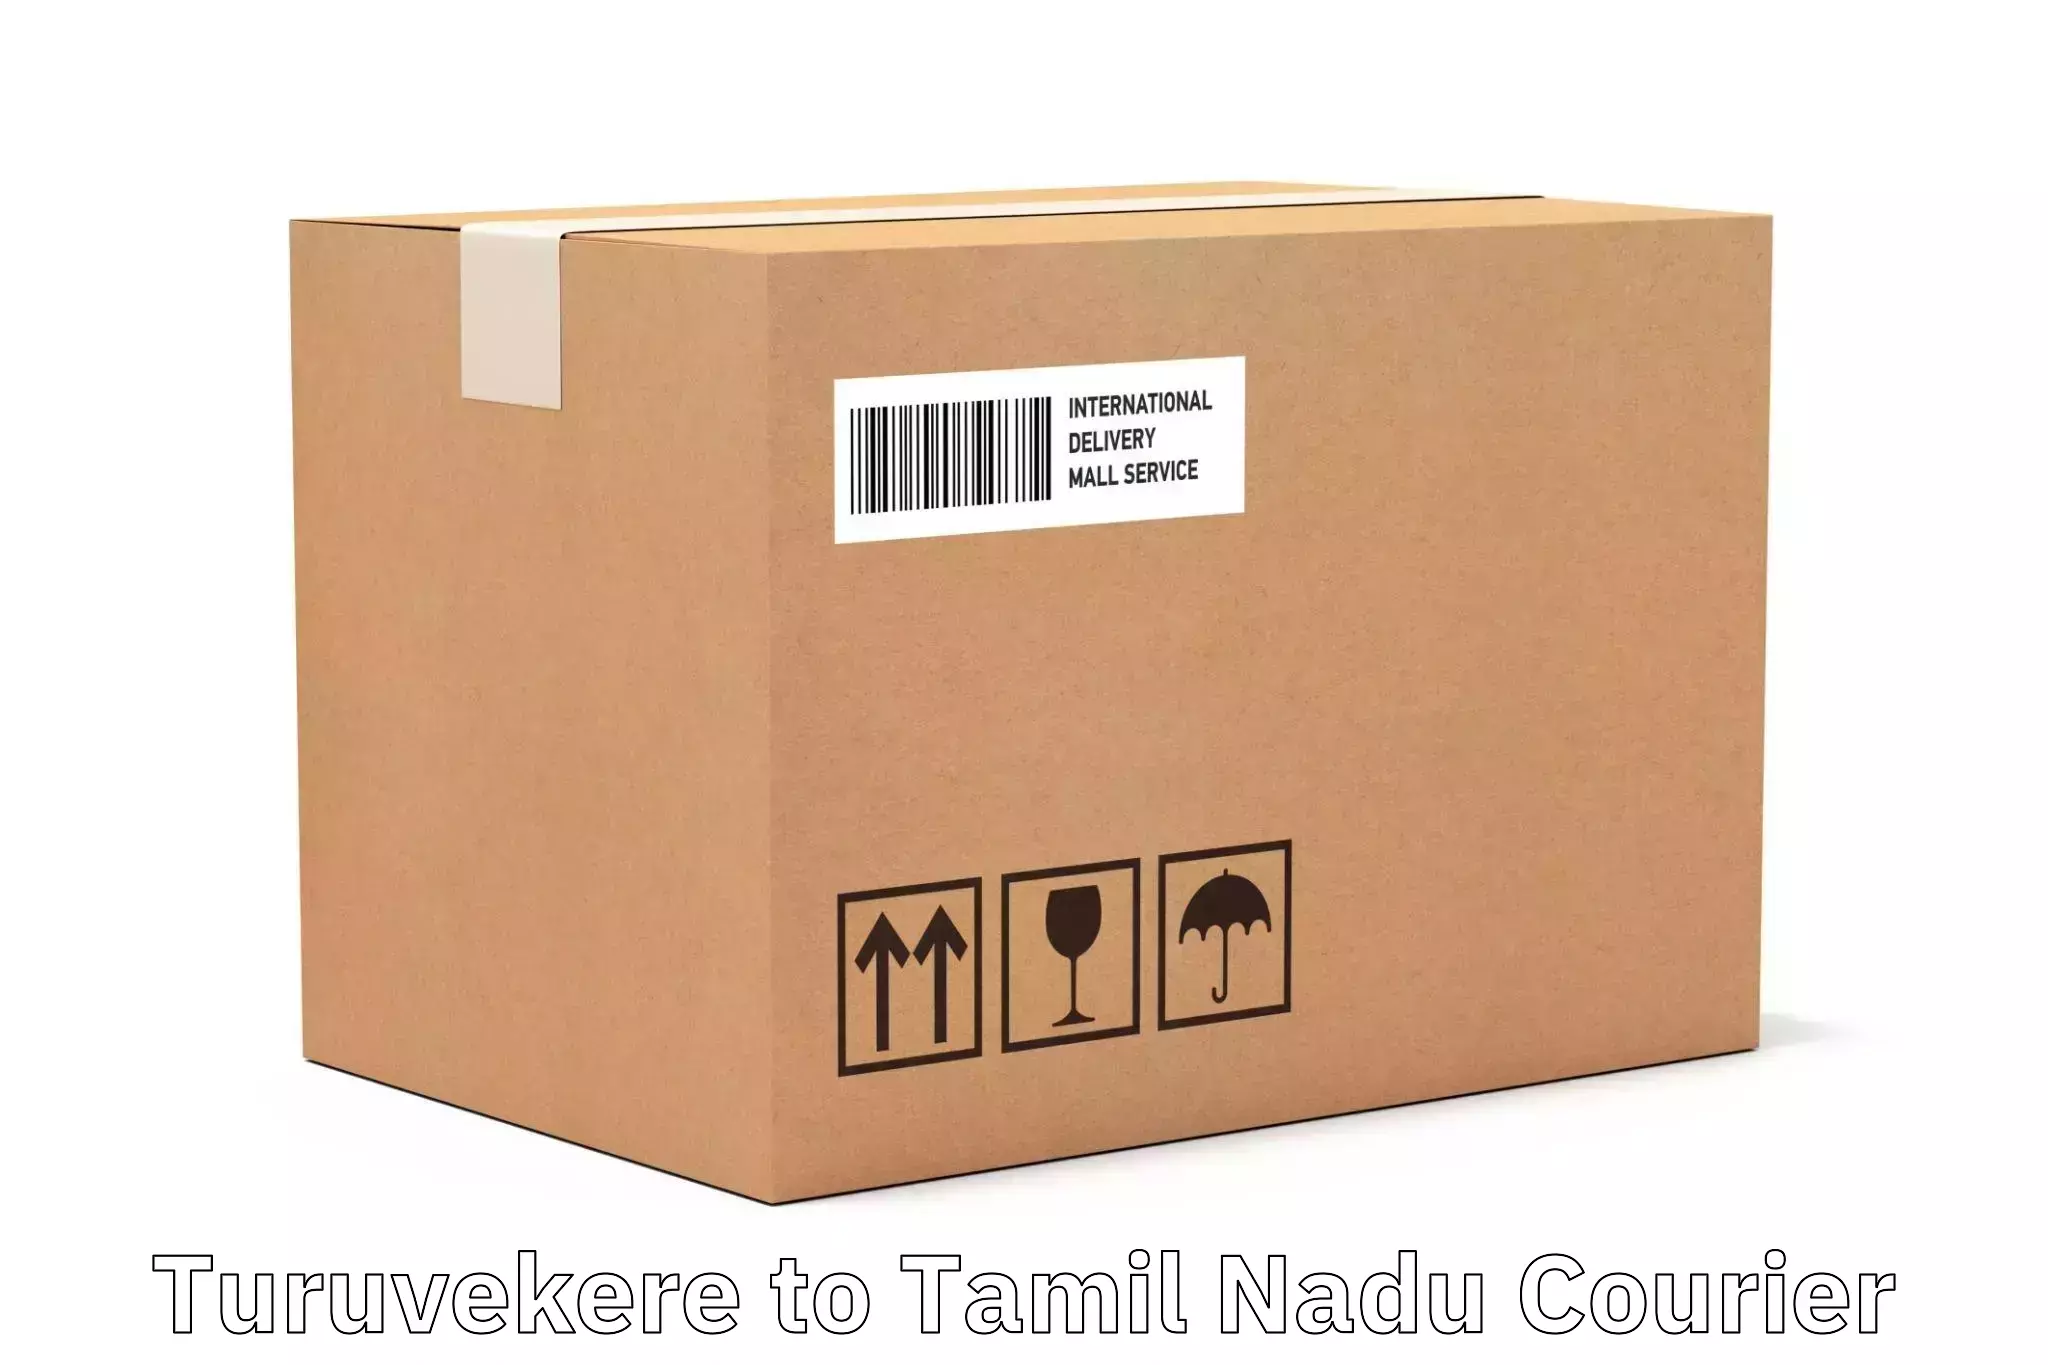 Advanced shipping logistics Turuvekere to Villupuram